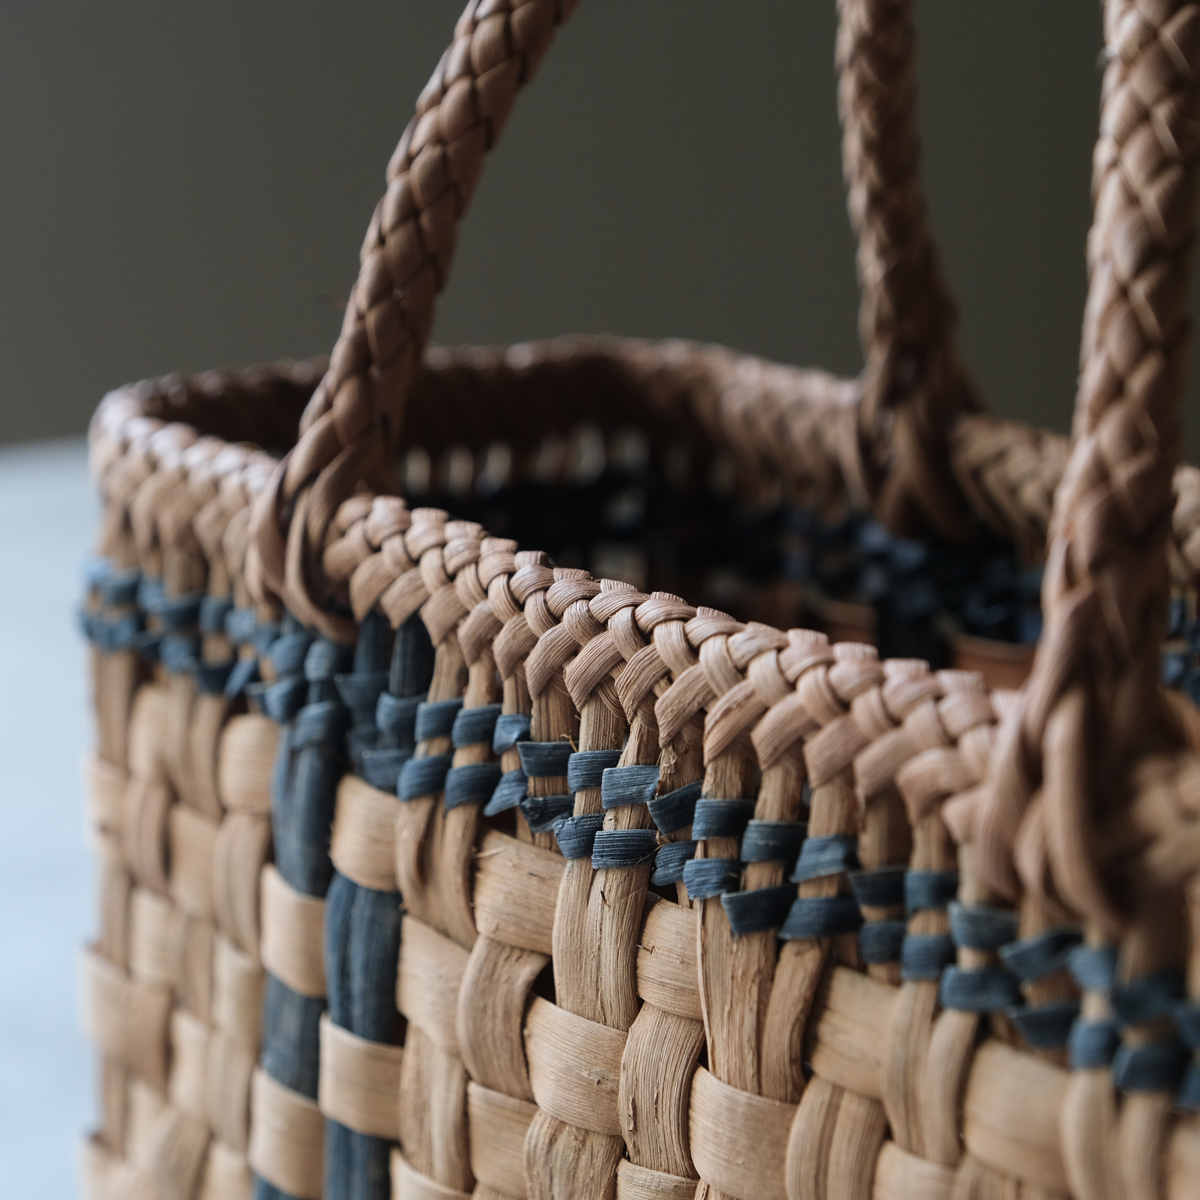 1635 市松編み 藍染めヒゴ縦横ライン 山葡萄かごバッグ | REFACTORY 